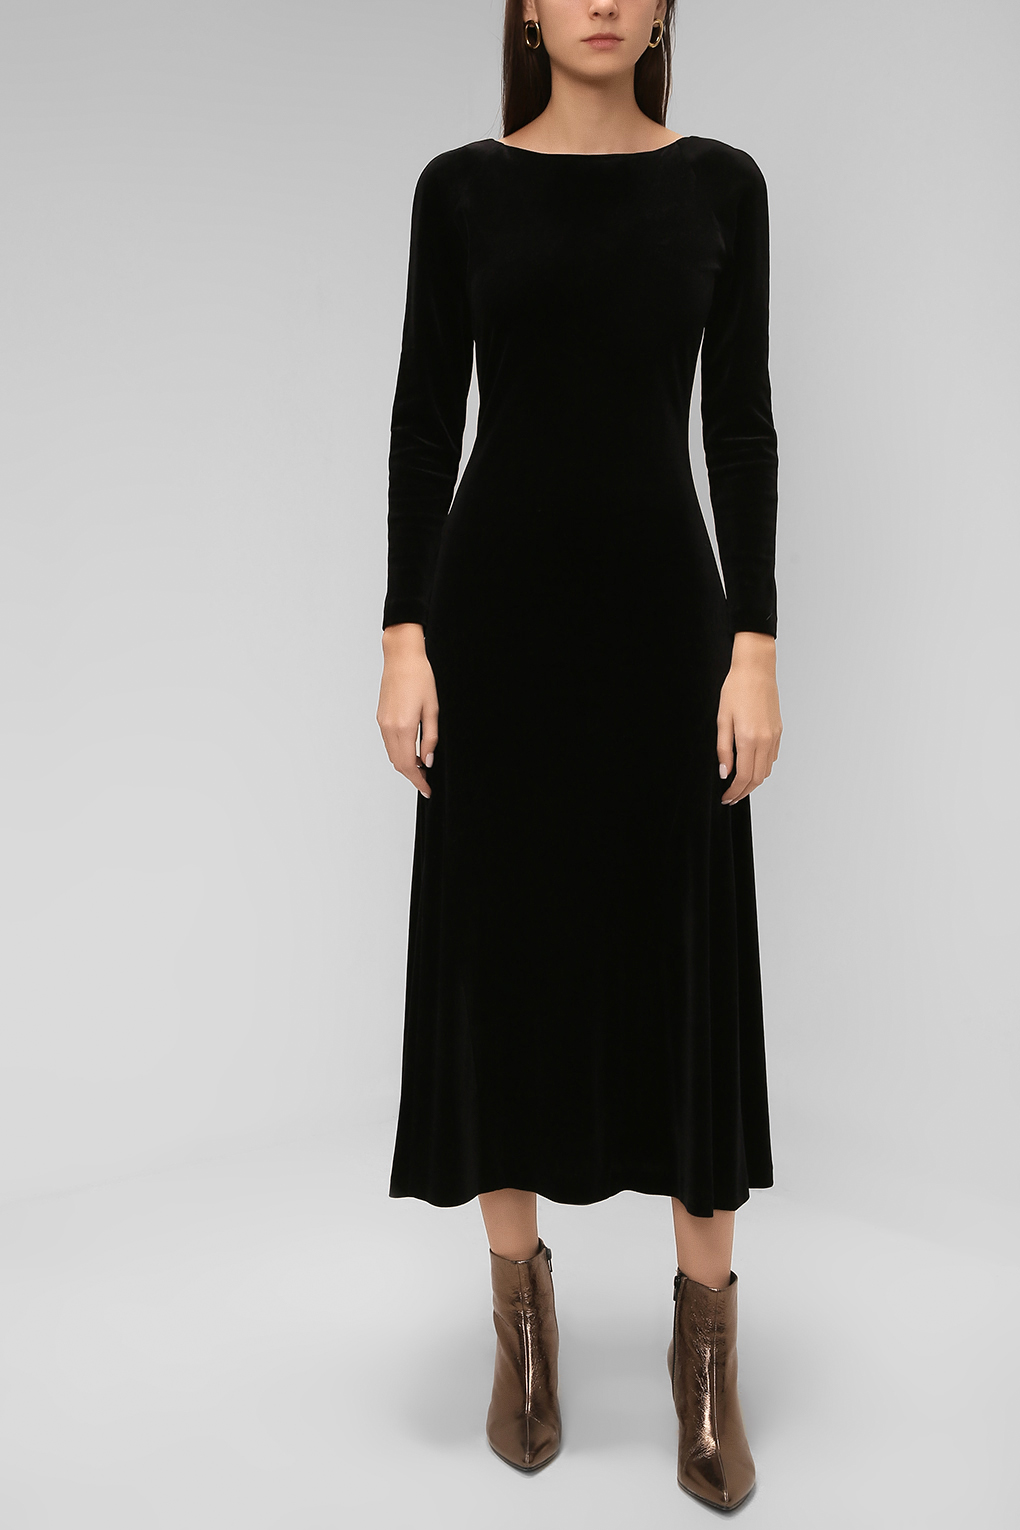 фото Платье женское paola ray pr220-3101-01 черное s